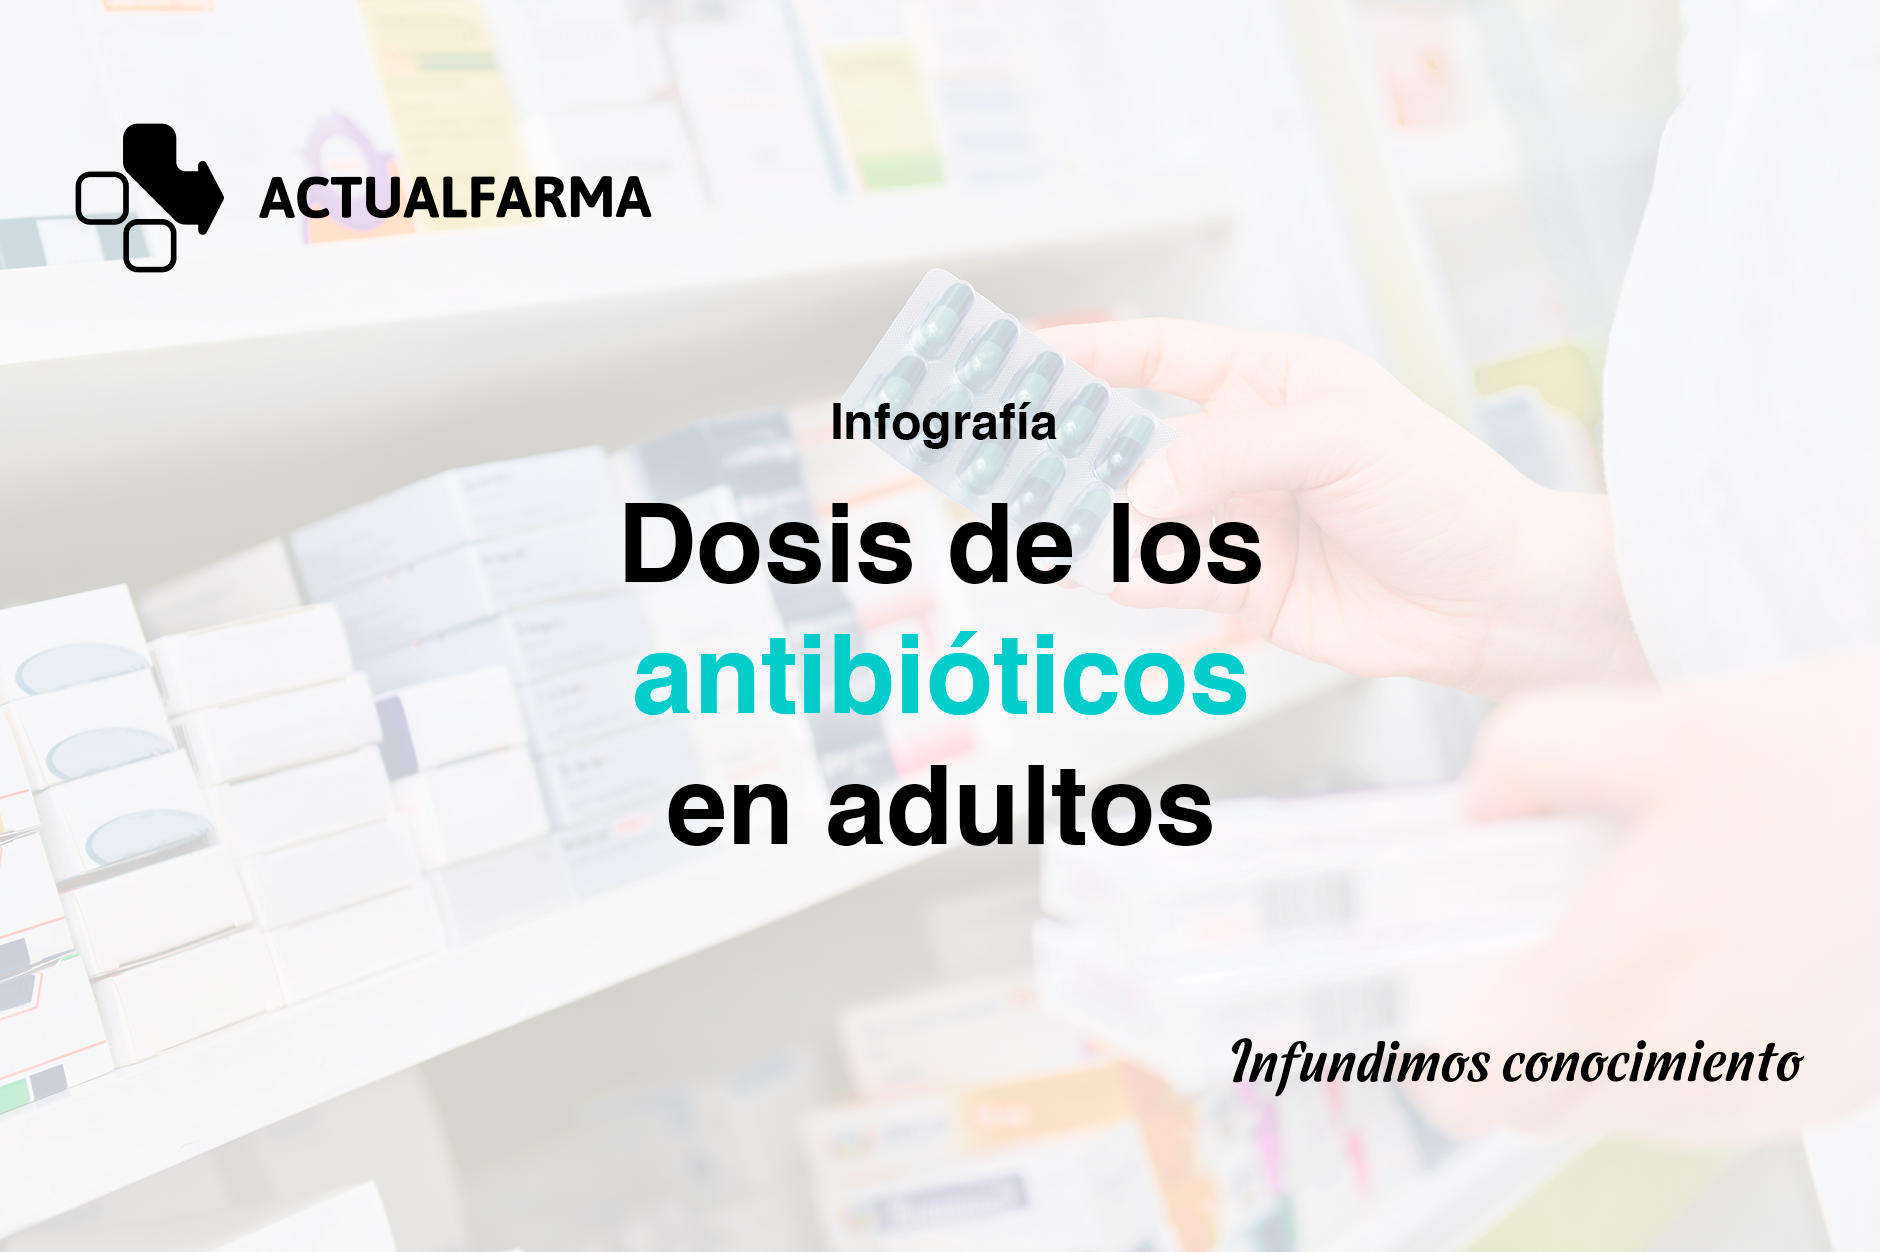 Antibióticos más frecuentemente usados en adultos